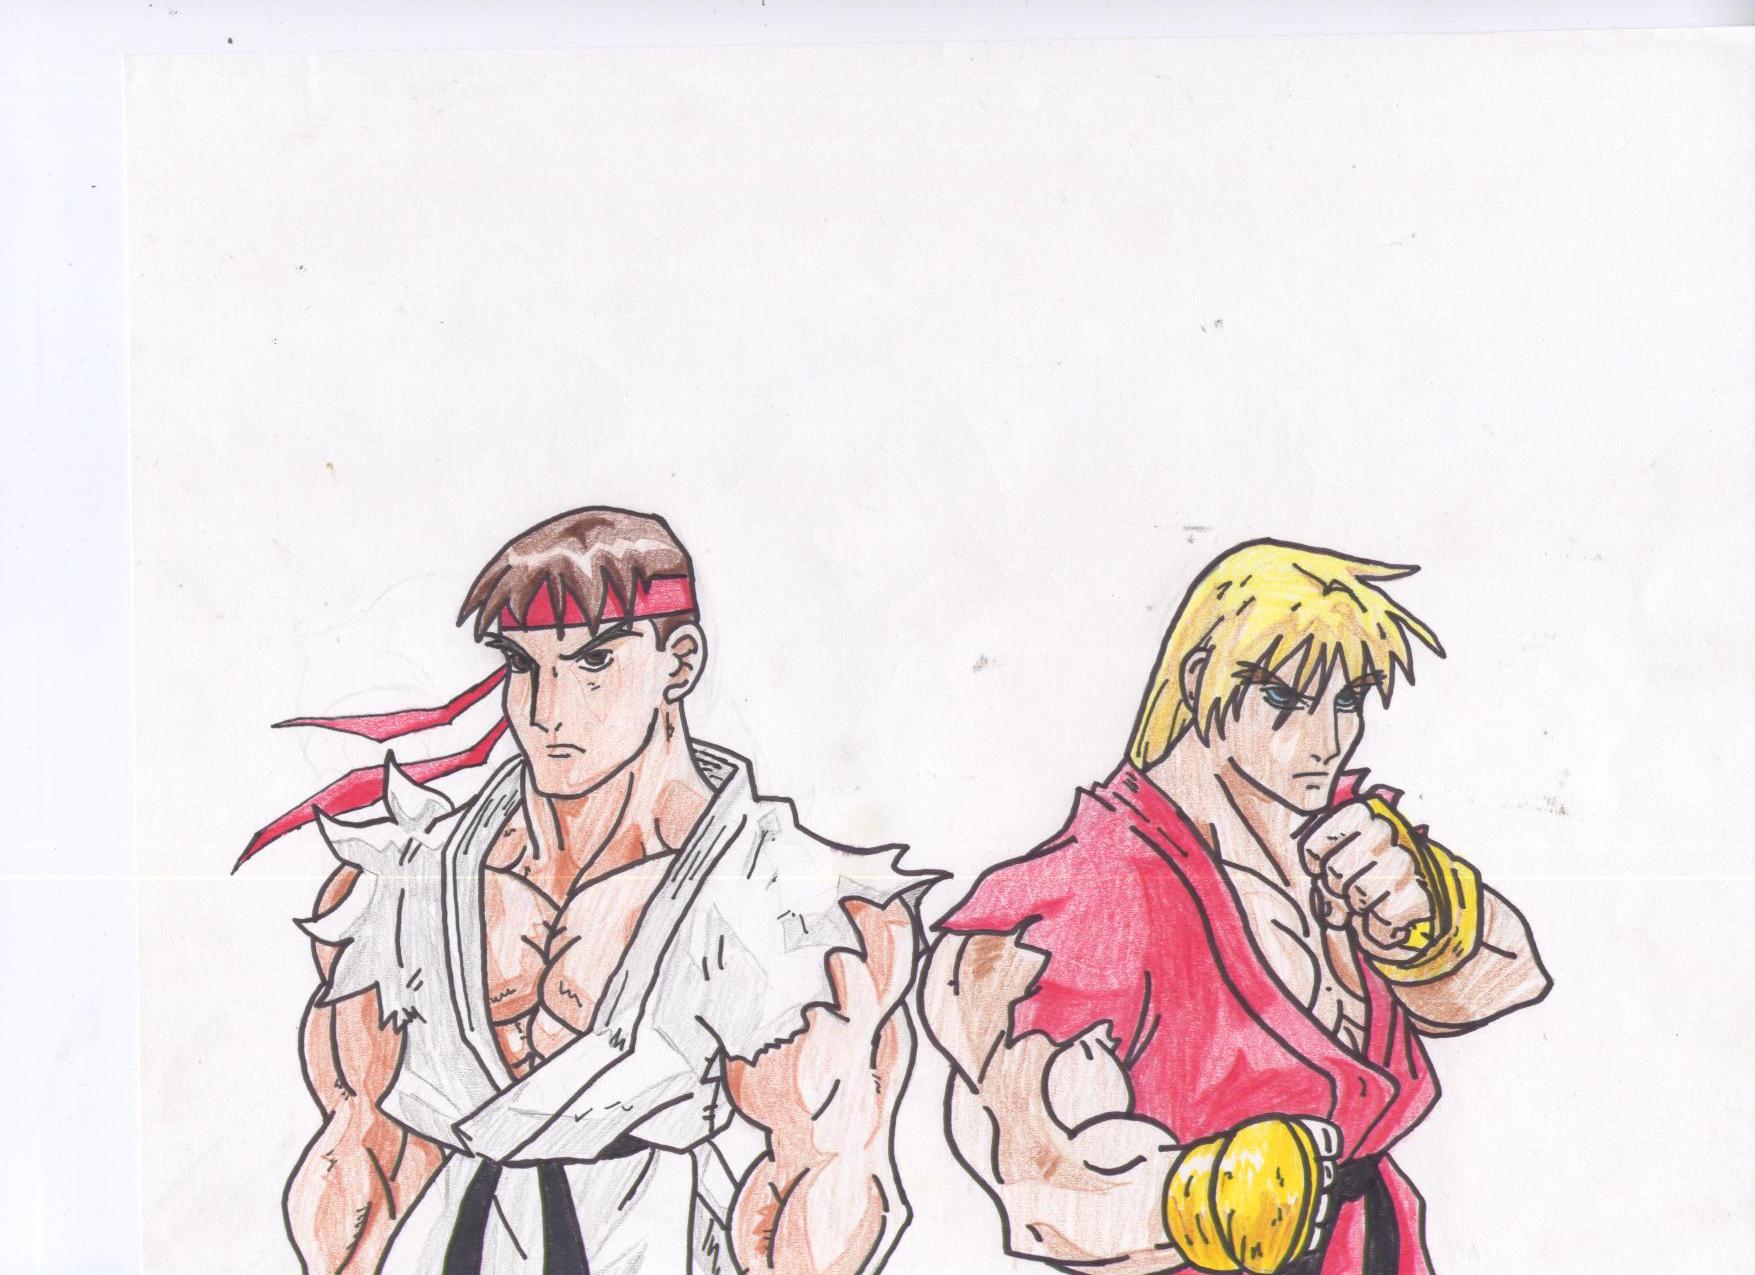 Ryu and Ken by gokengt